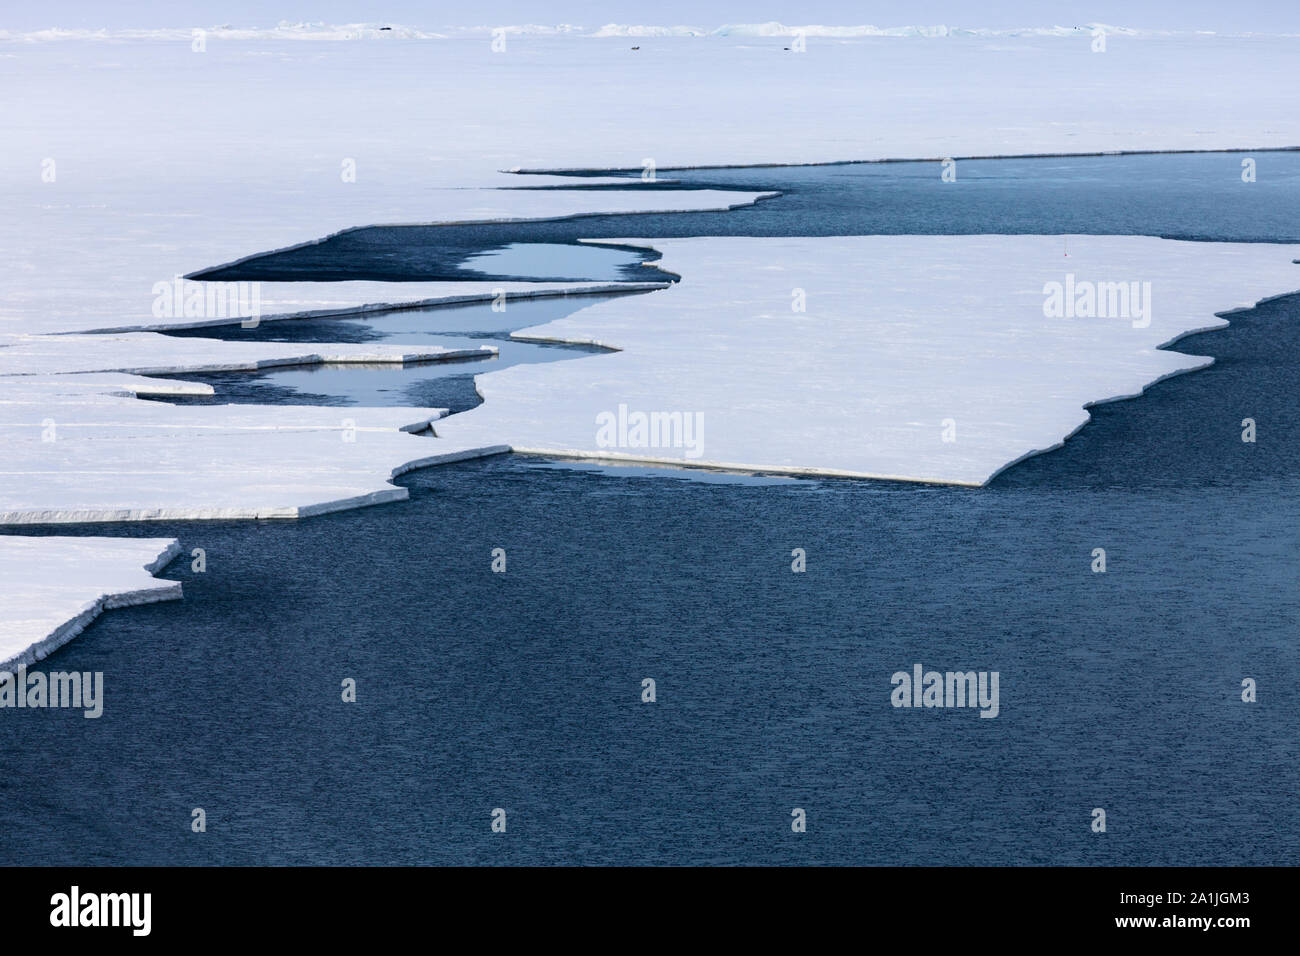 Rupture de la glace de mer qui se trouve en face de l'McMurdo/Ross de glace flottante. Près de la Base de Scott et de la station McMurdo, en Antarctique Banque D'Images